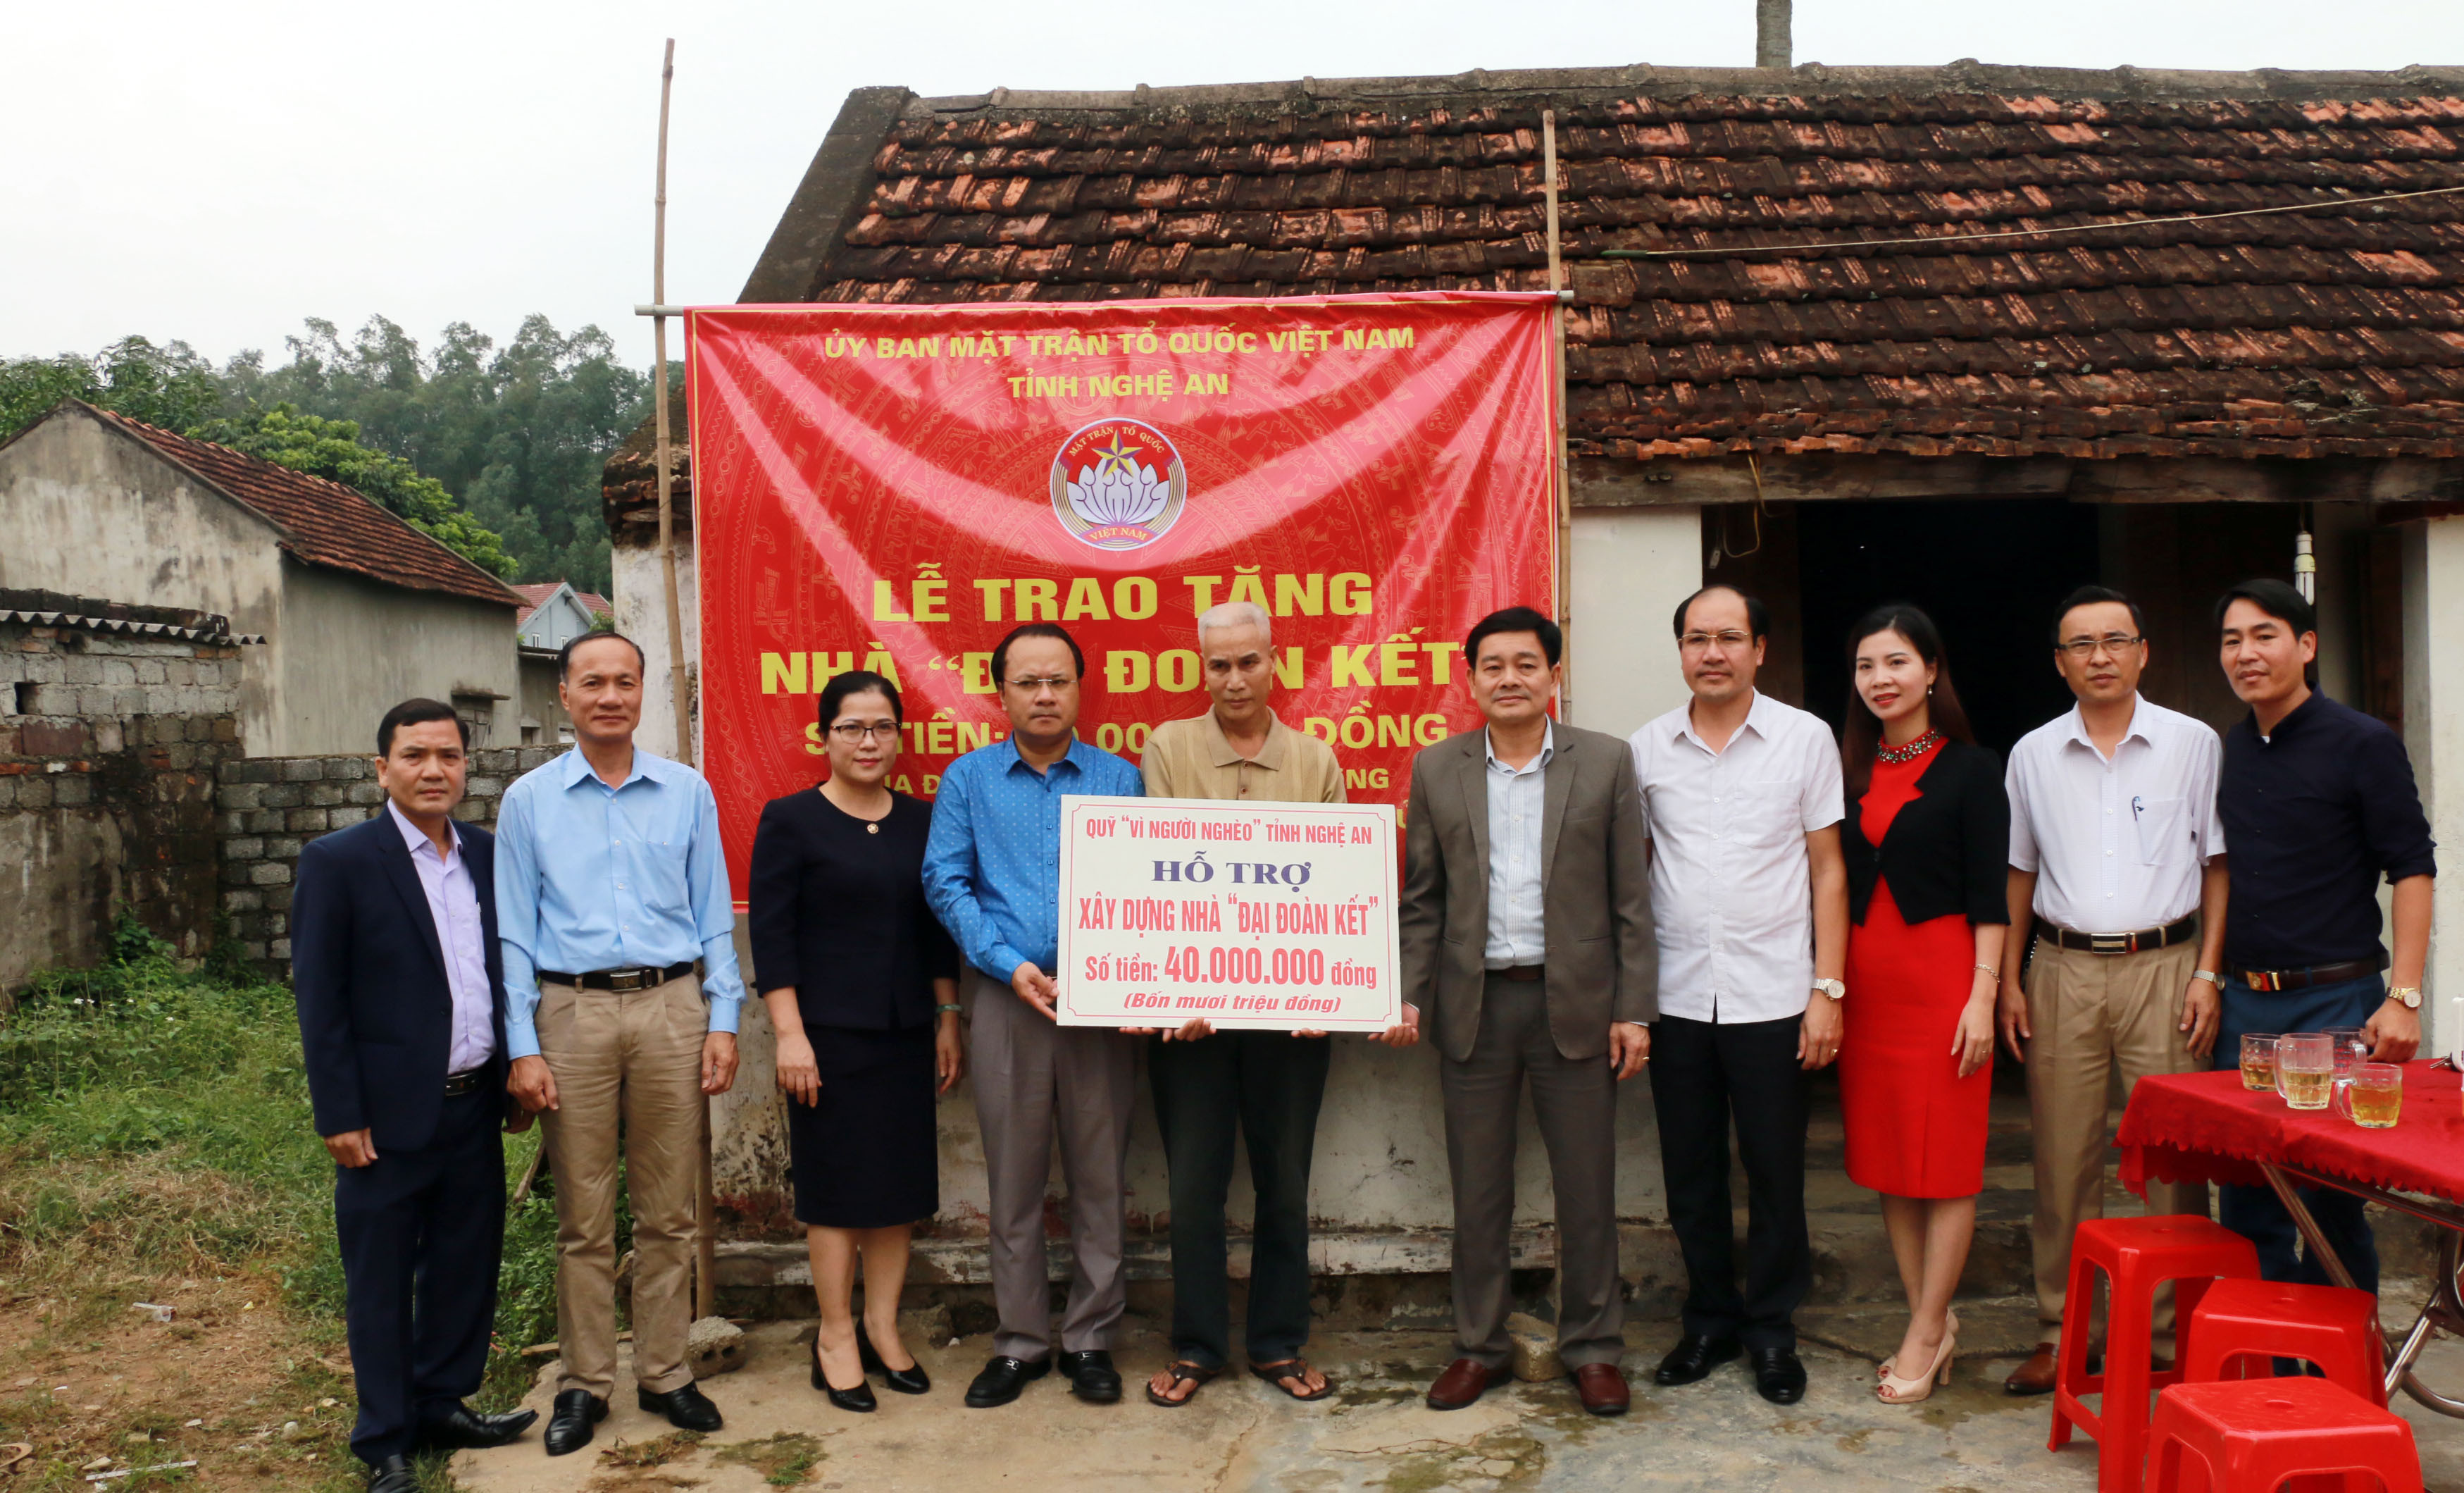 Đồng chí Nguyễn Nam Đình và các thành viên trong đoàn trao tặng hỗ trợ xây nhà Đại đoàn kết cho người dân phường Nghi Tân. Ảnh: Mỹ Hà